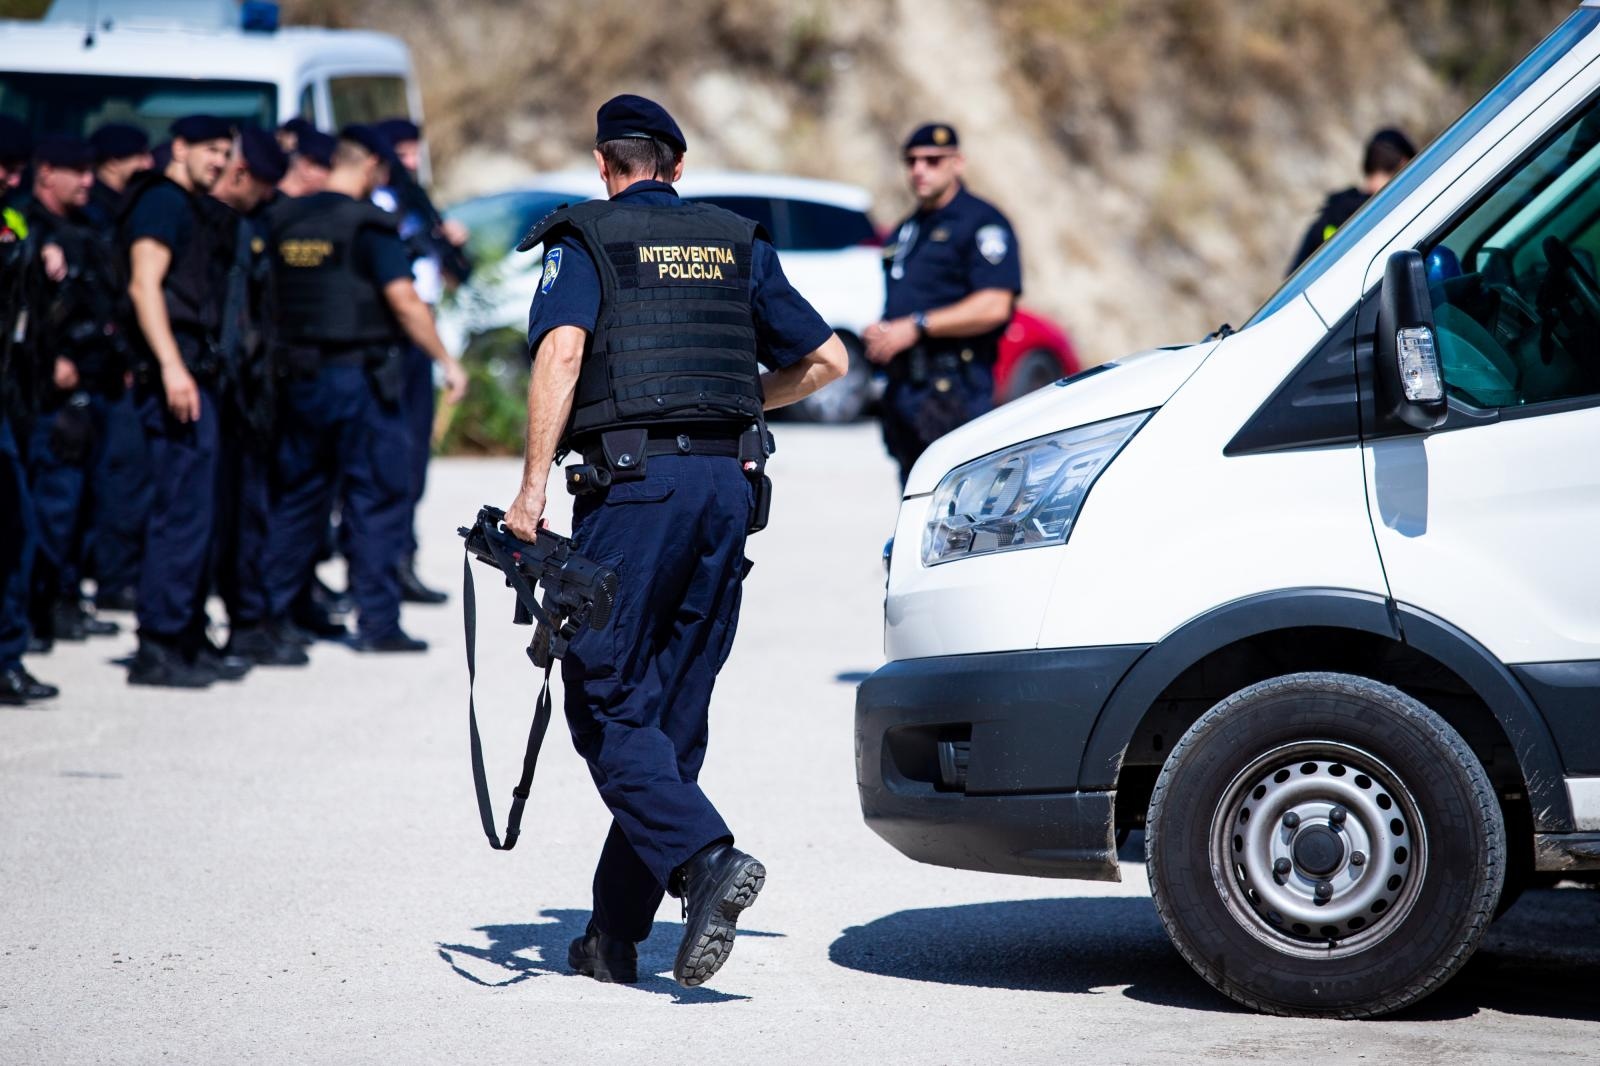 Blokirani su izlazi iz Splita, a policija zaustavlja i provjerava svako vozilo.